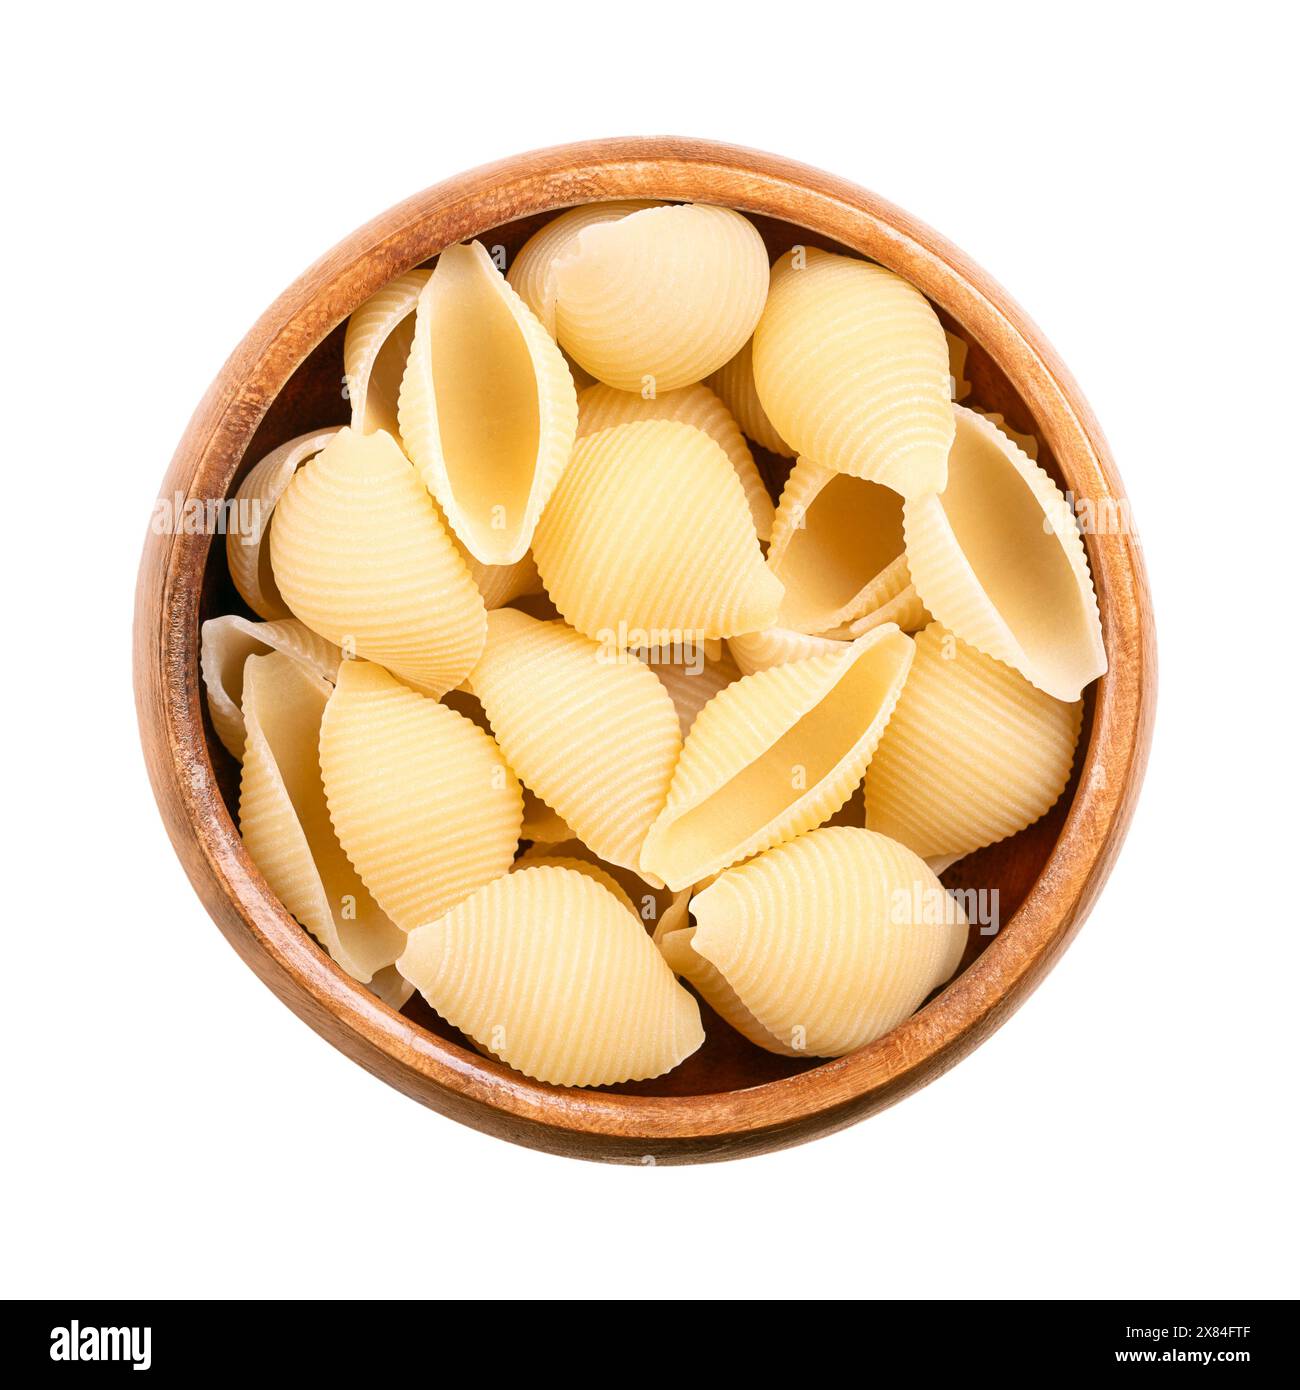 Conchiglie Rigate, schalenförmige und gefurchte italienische Pasta in einer Holzschale. Ungekochte Hartweizengrißnudeln. Nahaufnahme, von oben. Stockfoto